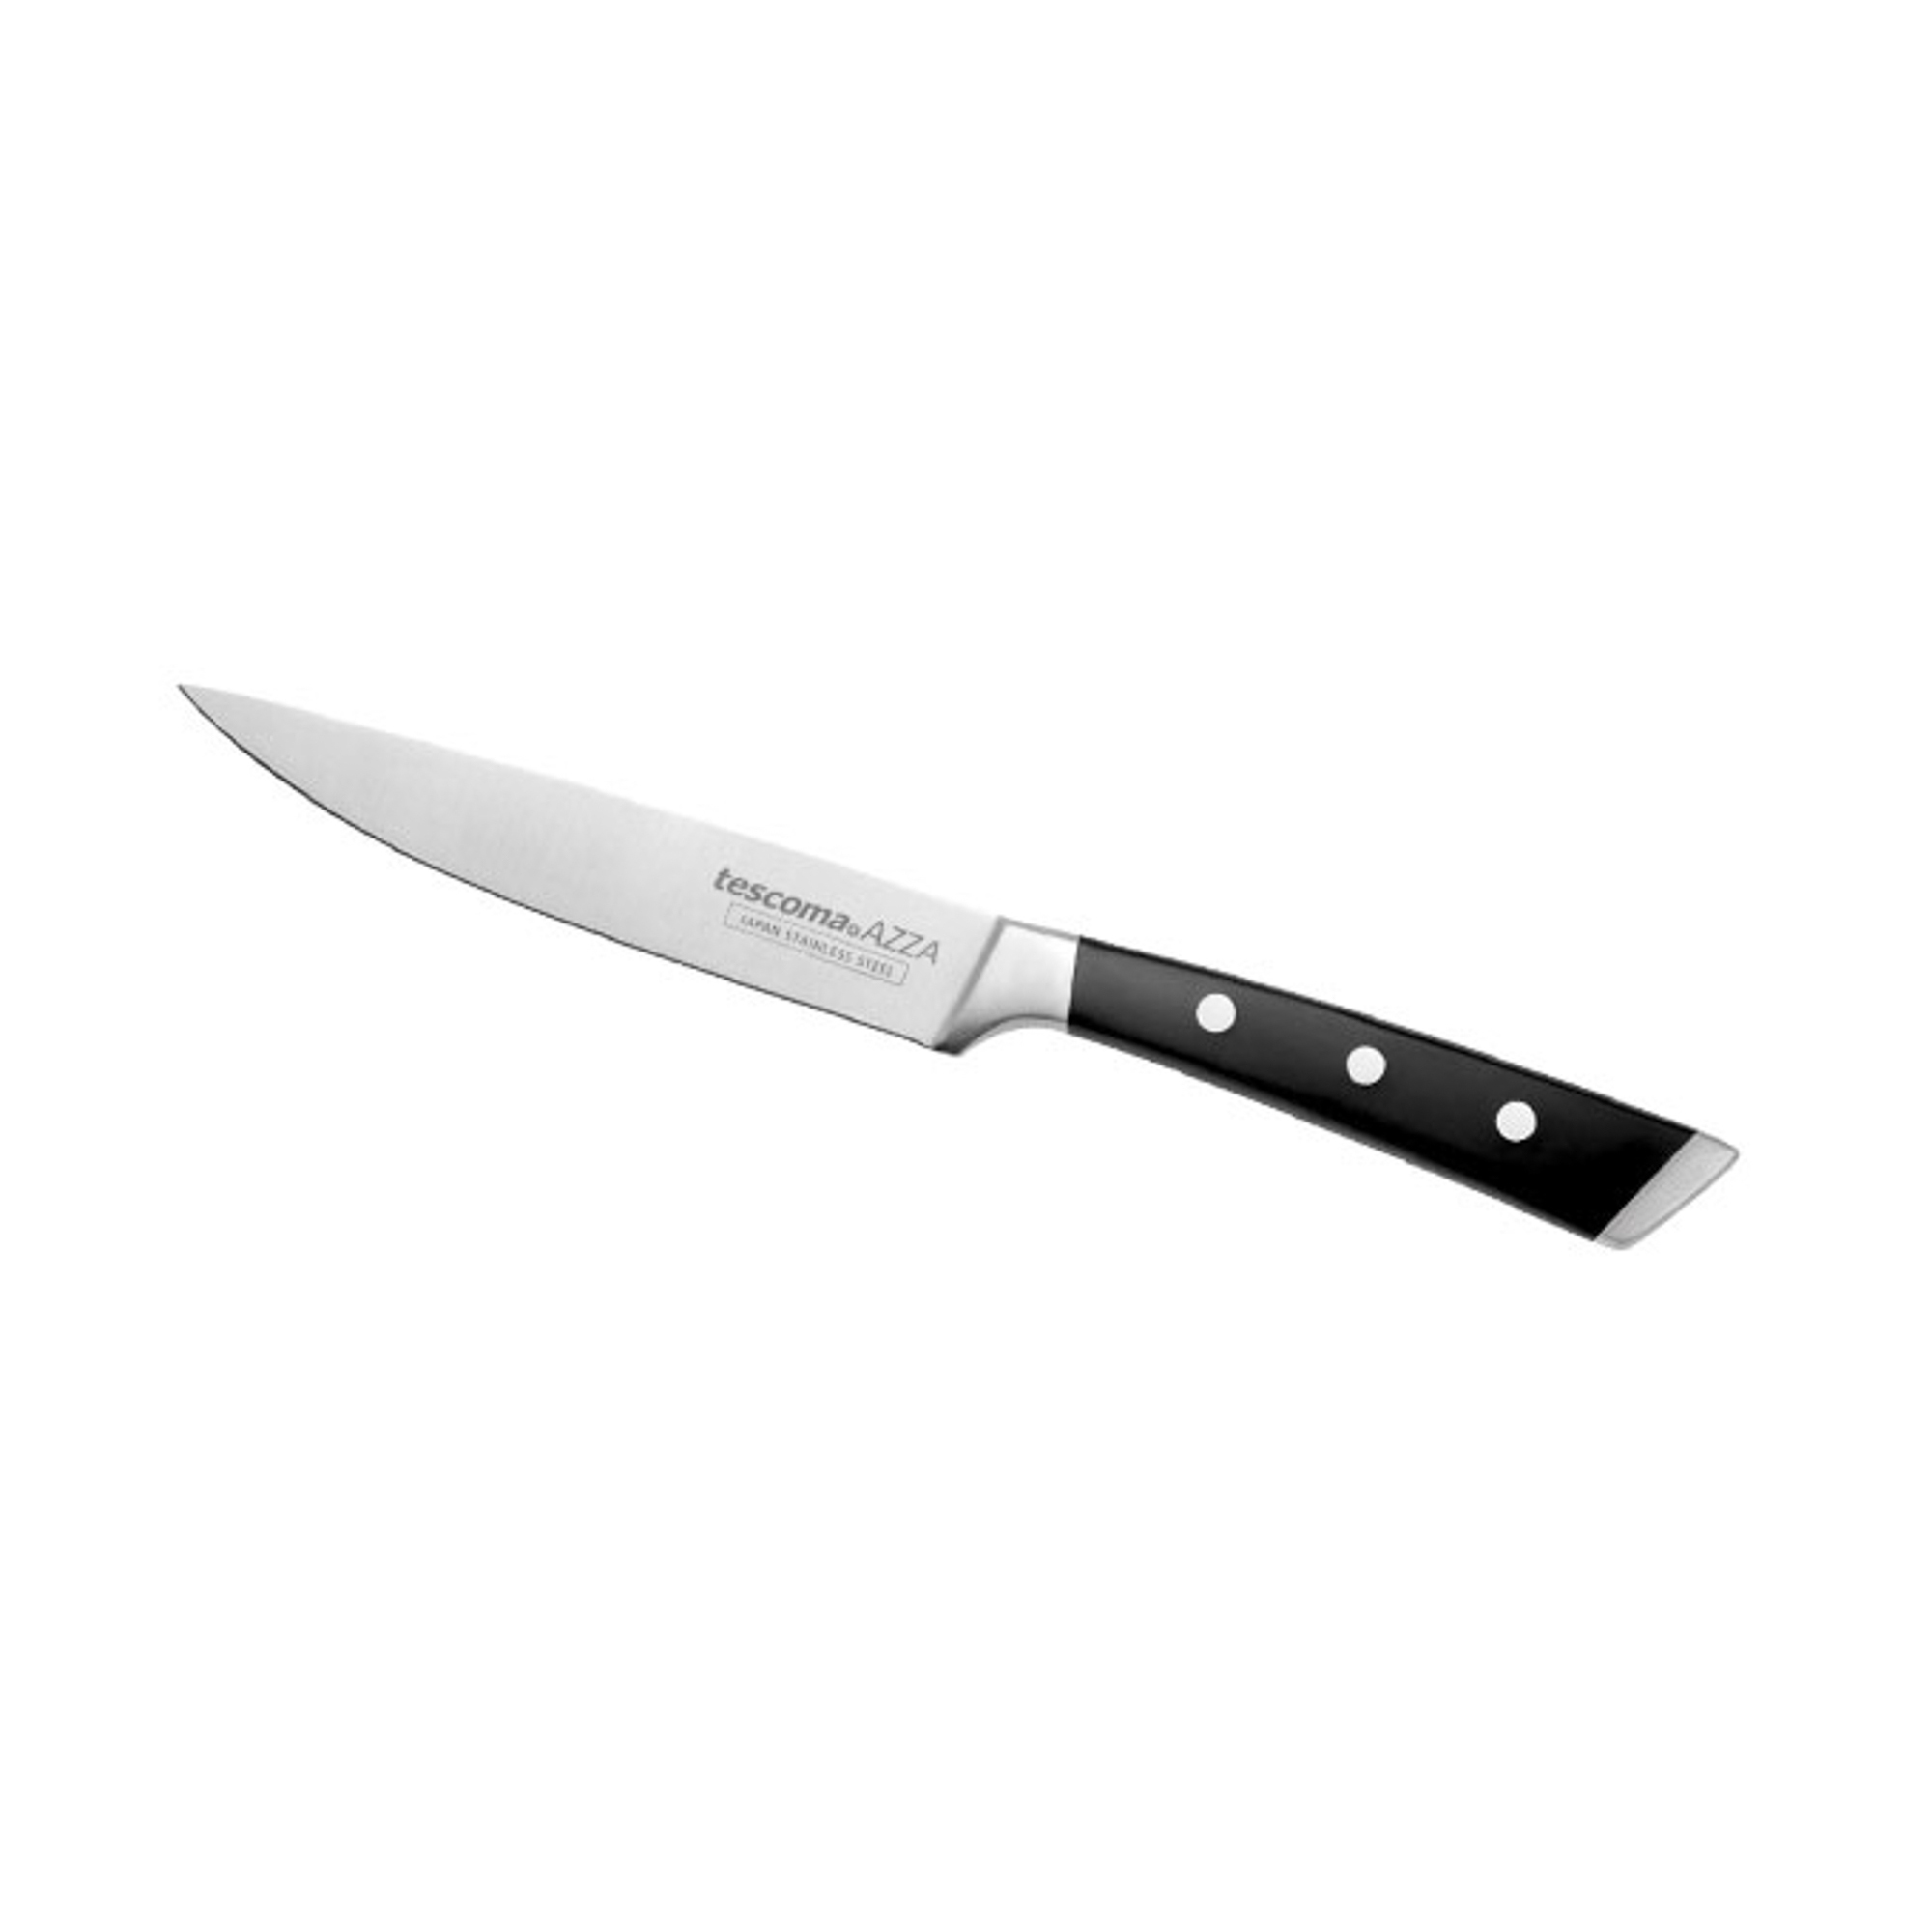 Нож Tescoma универсальный azza 13 см - фото 1